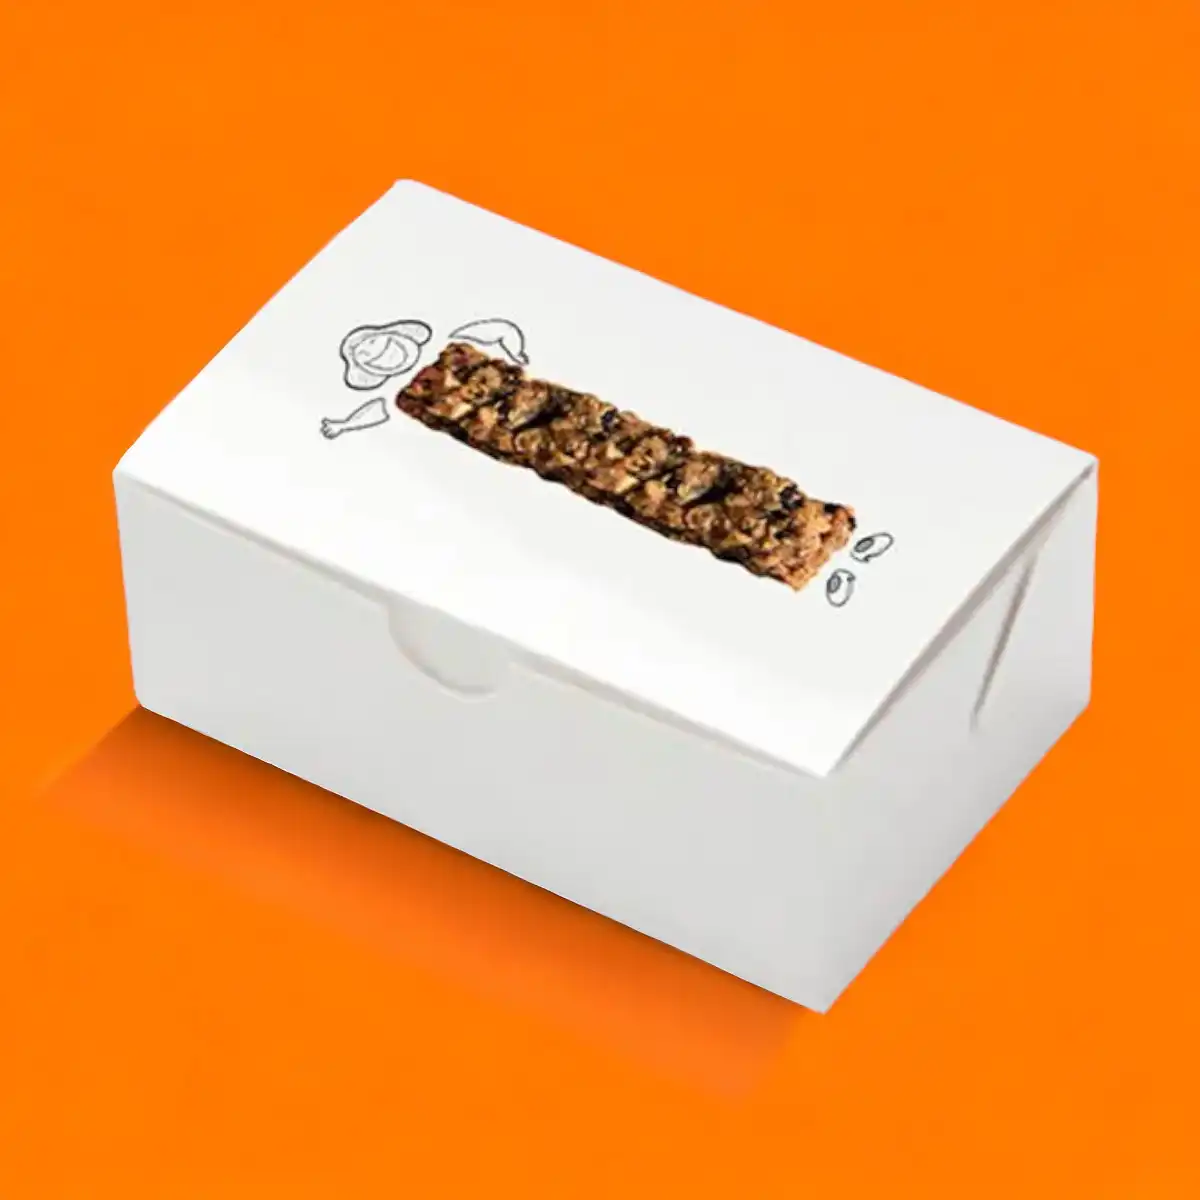 custom-dessert-packaging